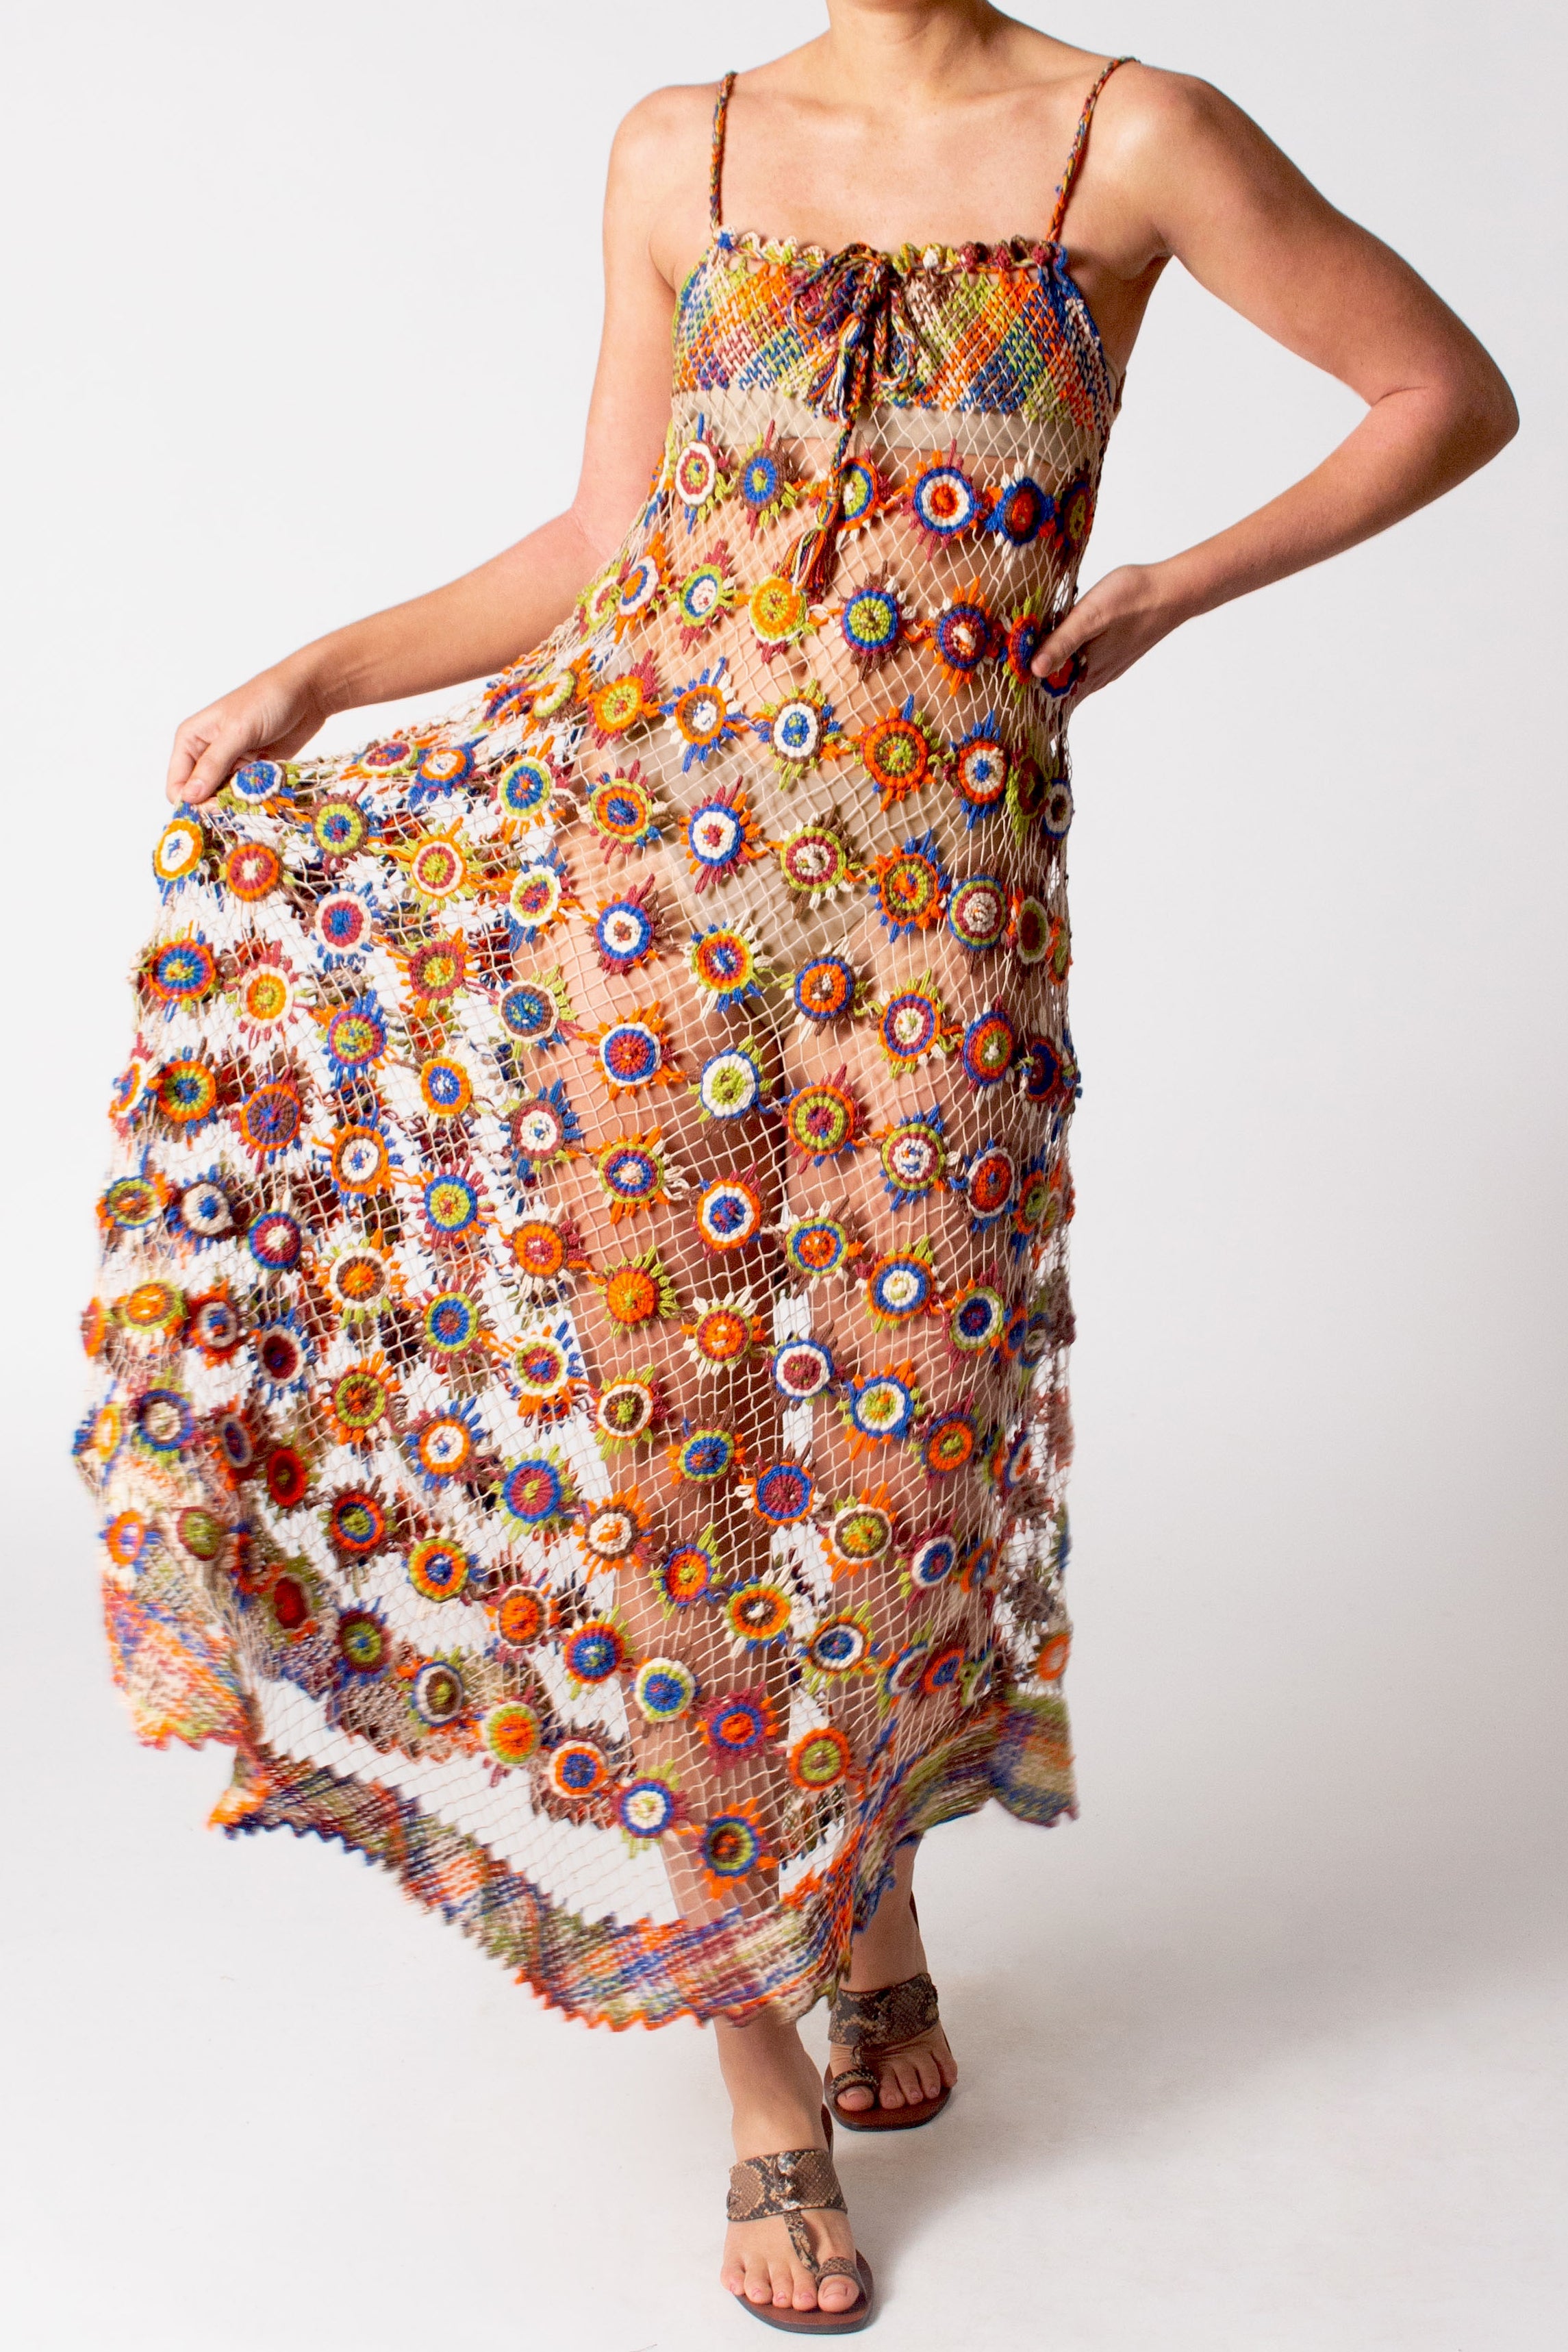 Cristiana Hand Knit Maxi Dress by Miguelina